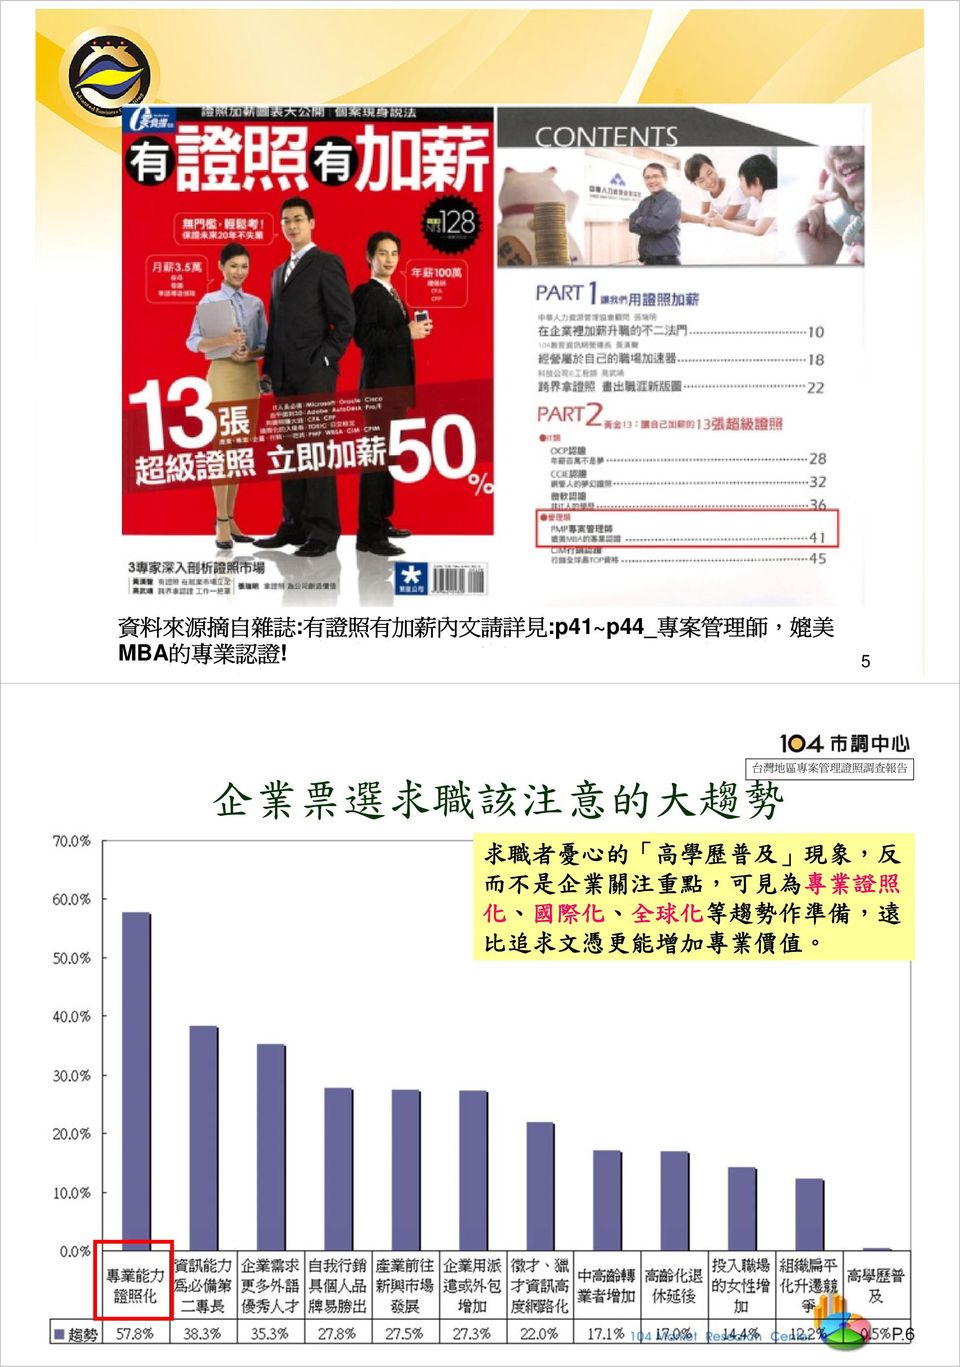 5 企 業 票 選 求 職 該 注 意 的 大 趨 勢 台 灣 地 區 專 案 管 理 證 照 調 查 報 告 求 職 者 憂